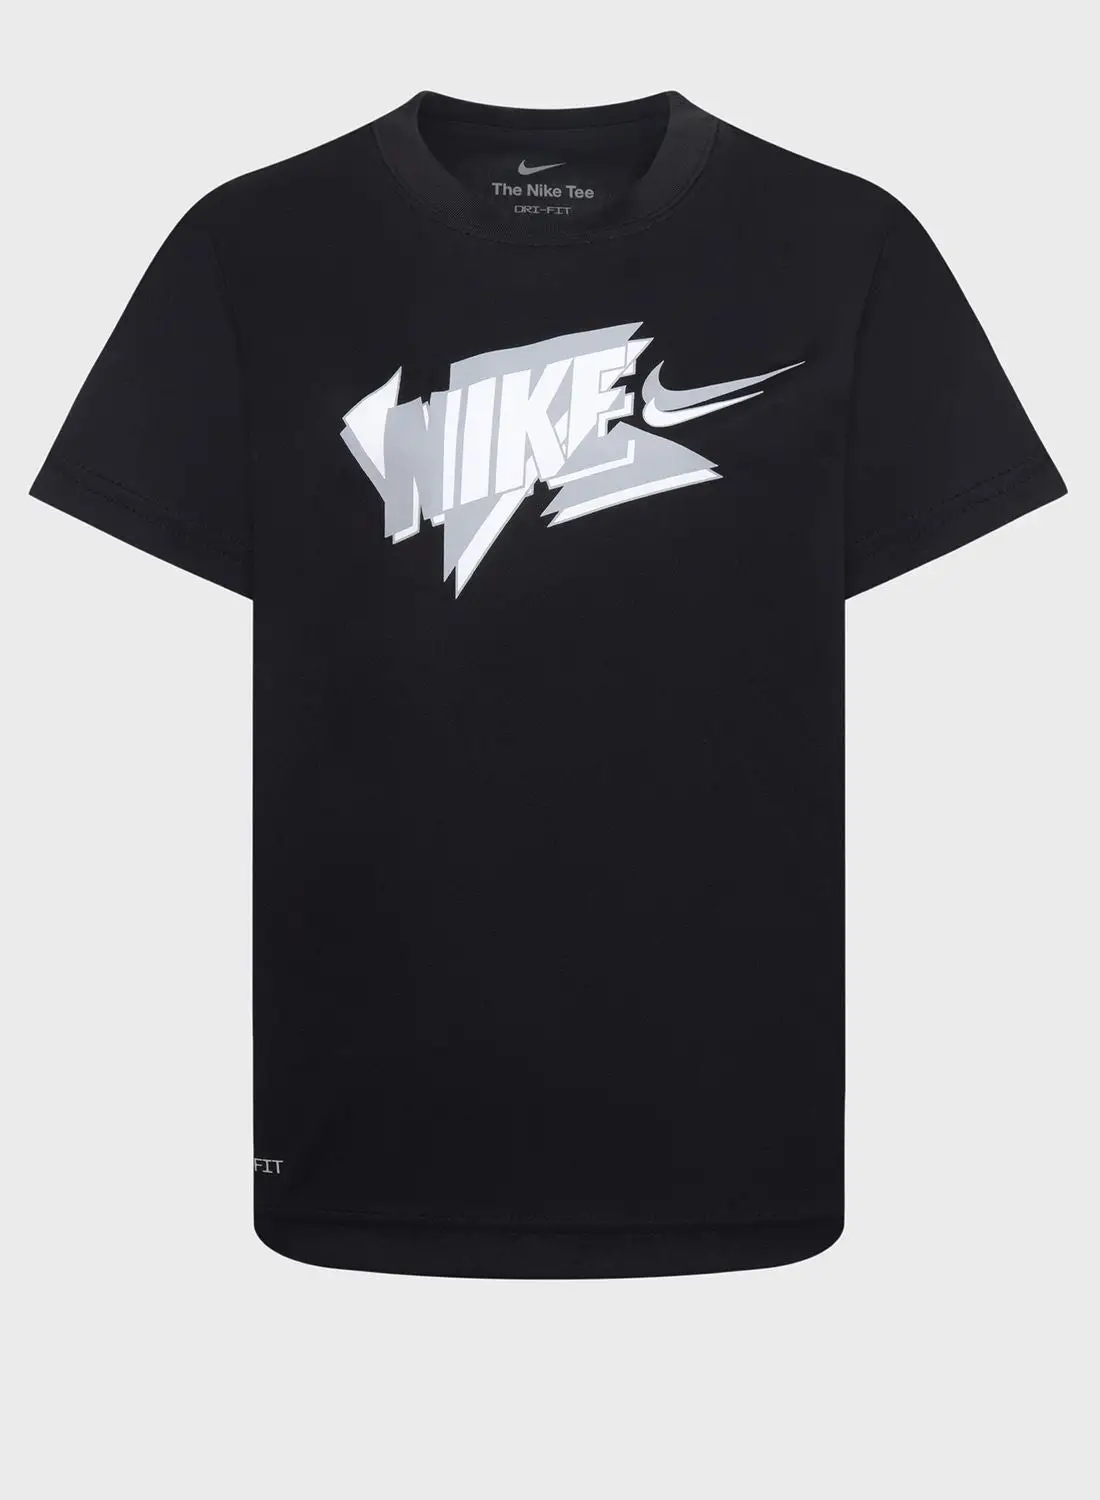 Nike Kids Dri-Fit T-Shirt